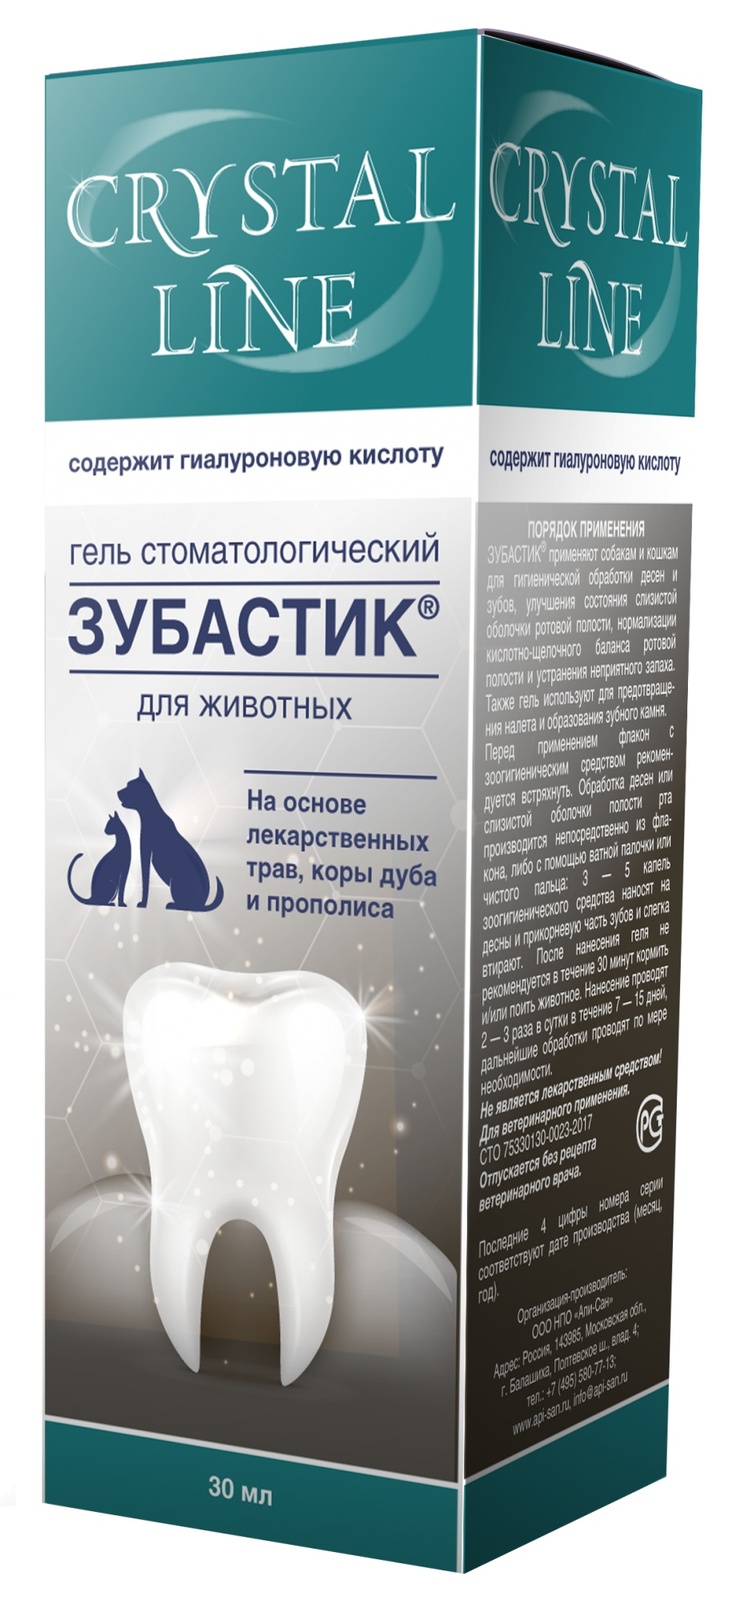 Apicenna Apicenna зубастик гель для чистки зубов Crystal line (30 г) apicenna crystal line зубастик спрей стоматологический для кошек и собак 30 мл